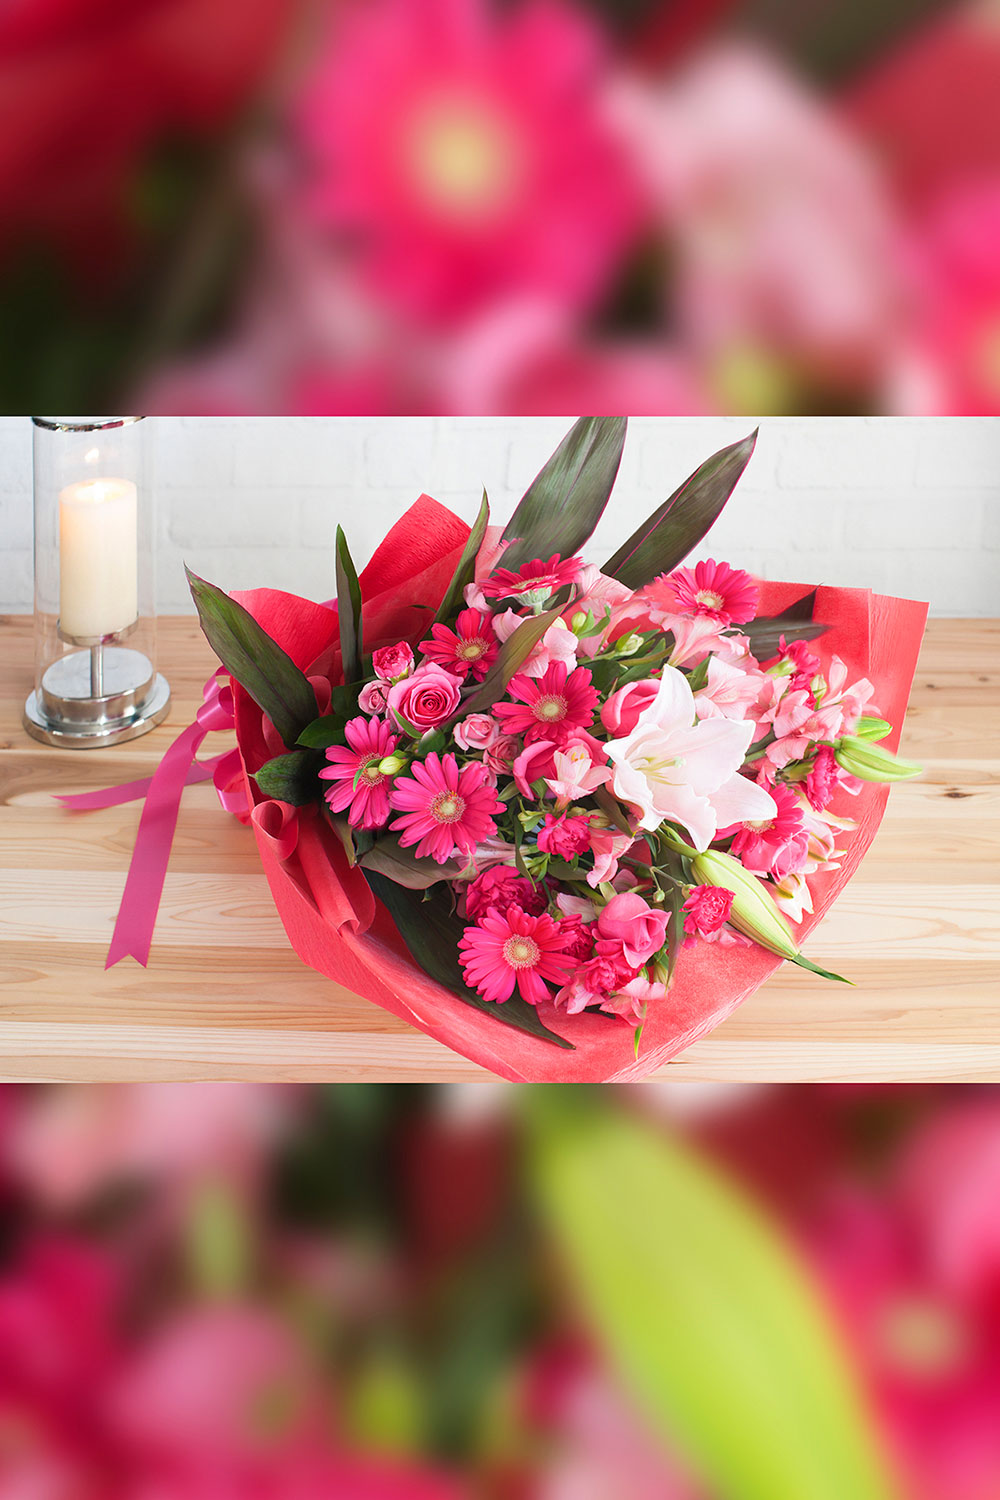 合格祝い 合格祝いを明るく彩るピンク色の花束 ラッピング付き 高さ約65cm 門出のお祝い花 個人編 お祝い お供えの花通販ギフトは送料無料の お花の窓口 へ